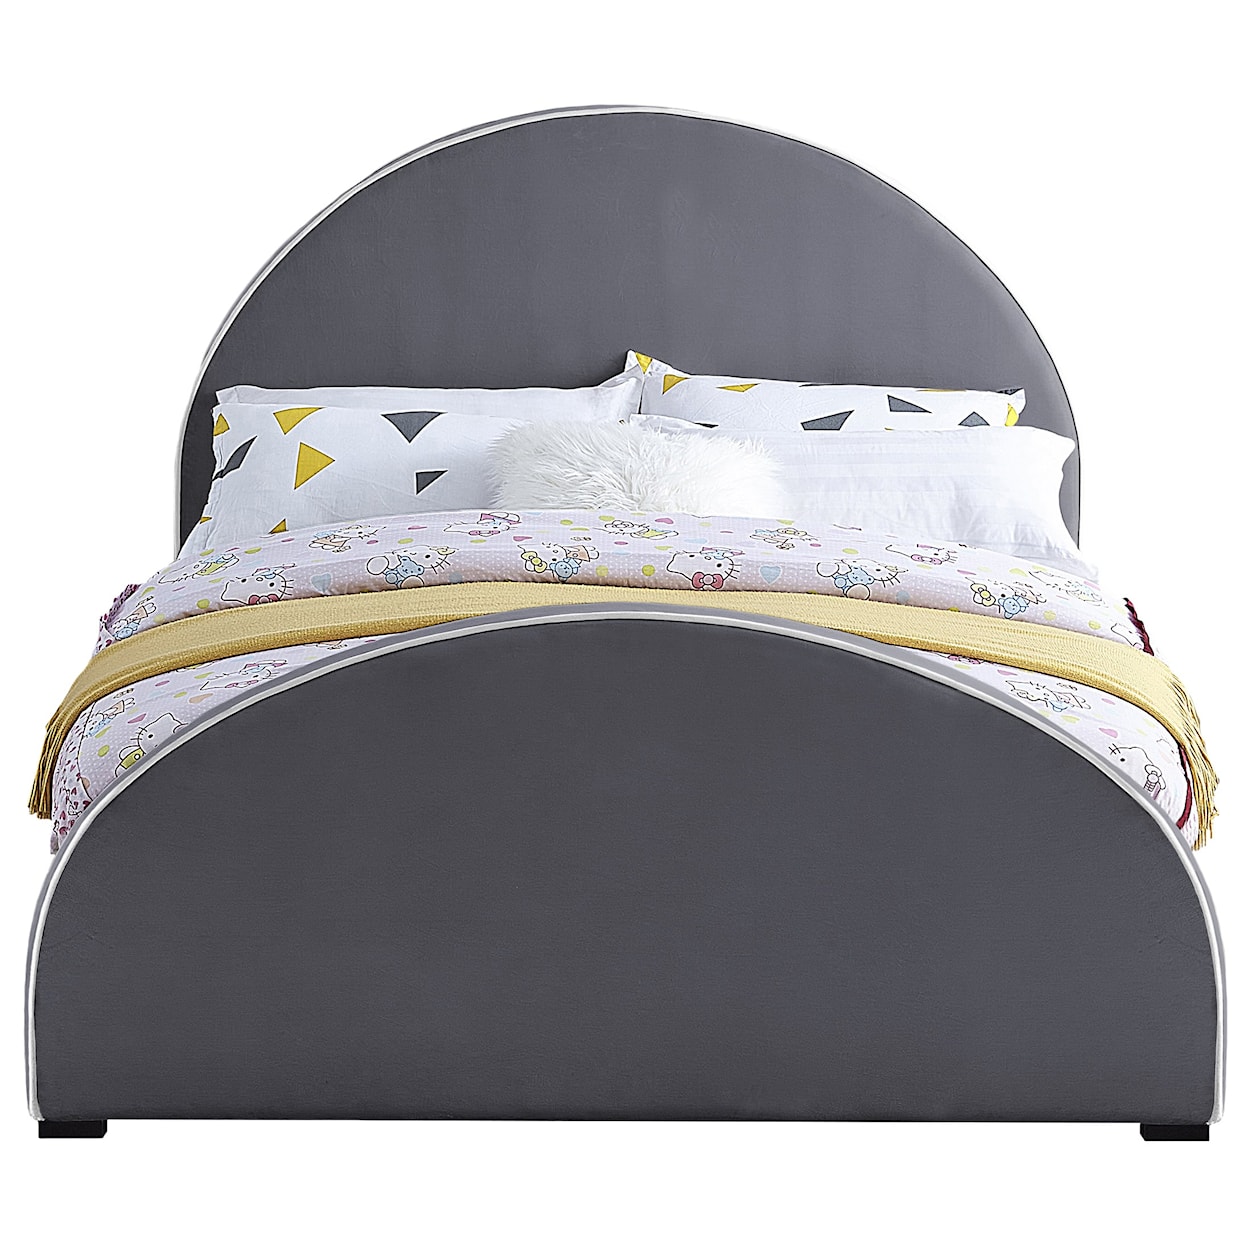 Meridian Furniture Brody Queen Bed